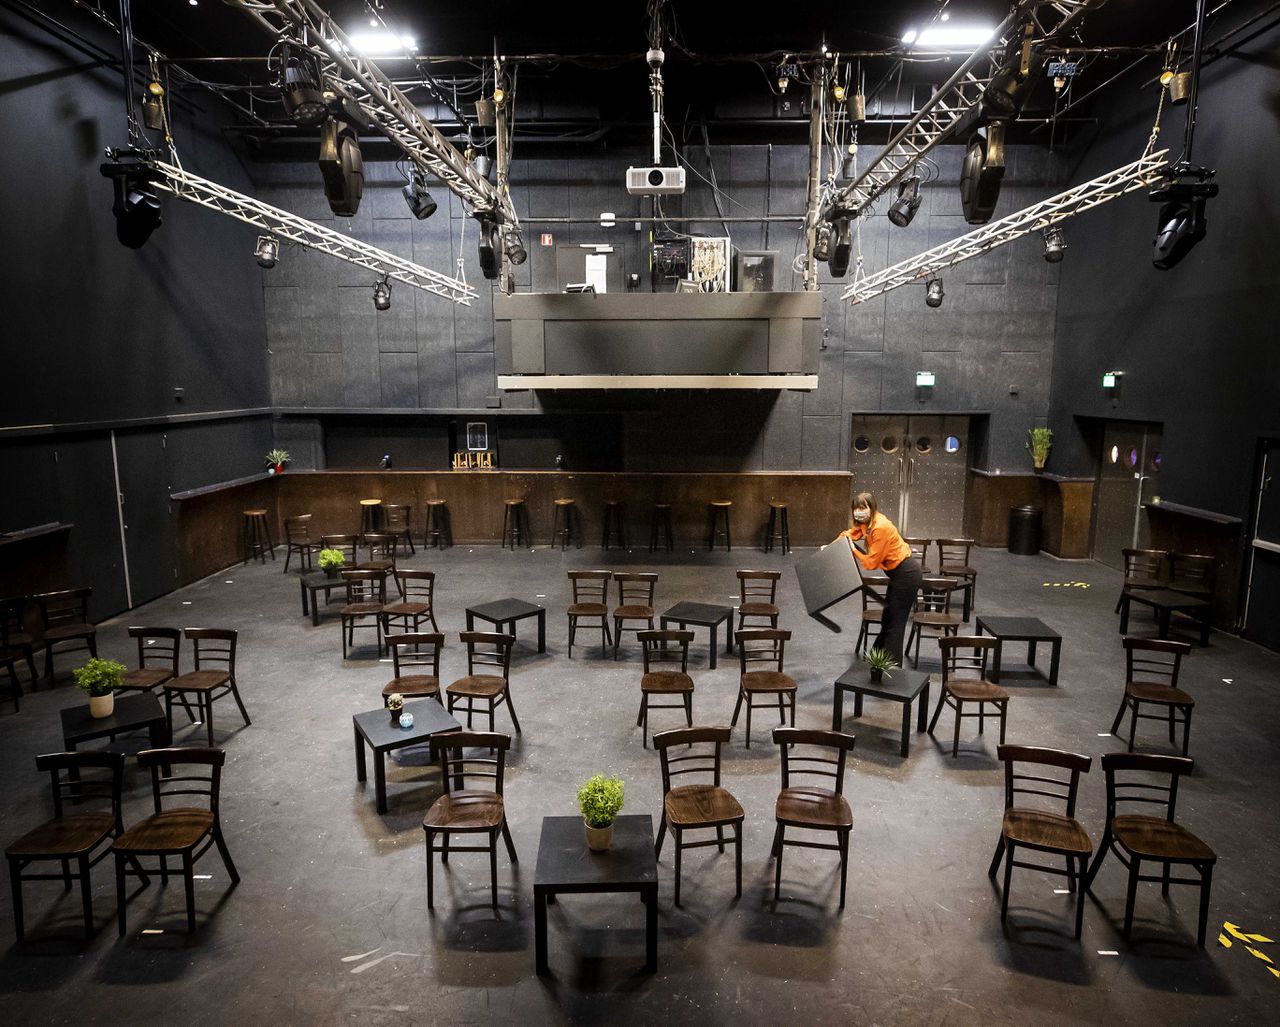 Een medewerker van het Utrechtse poppodium De Helling zet tafels en stoelen klaar voor het eerste concert sinds het begin van de lockdown. Het publiek moet een negatieve coronatest laten zien .